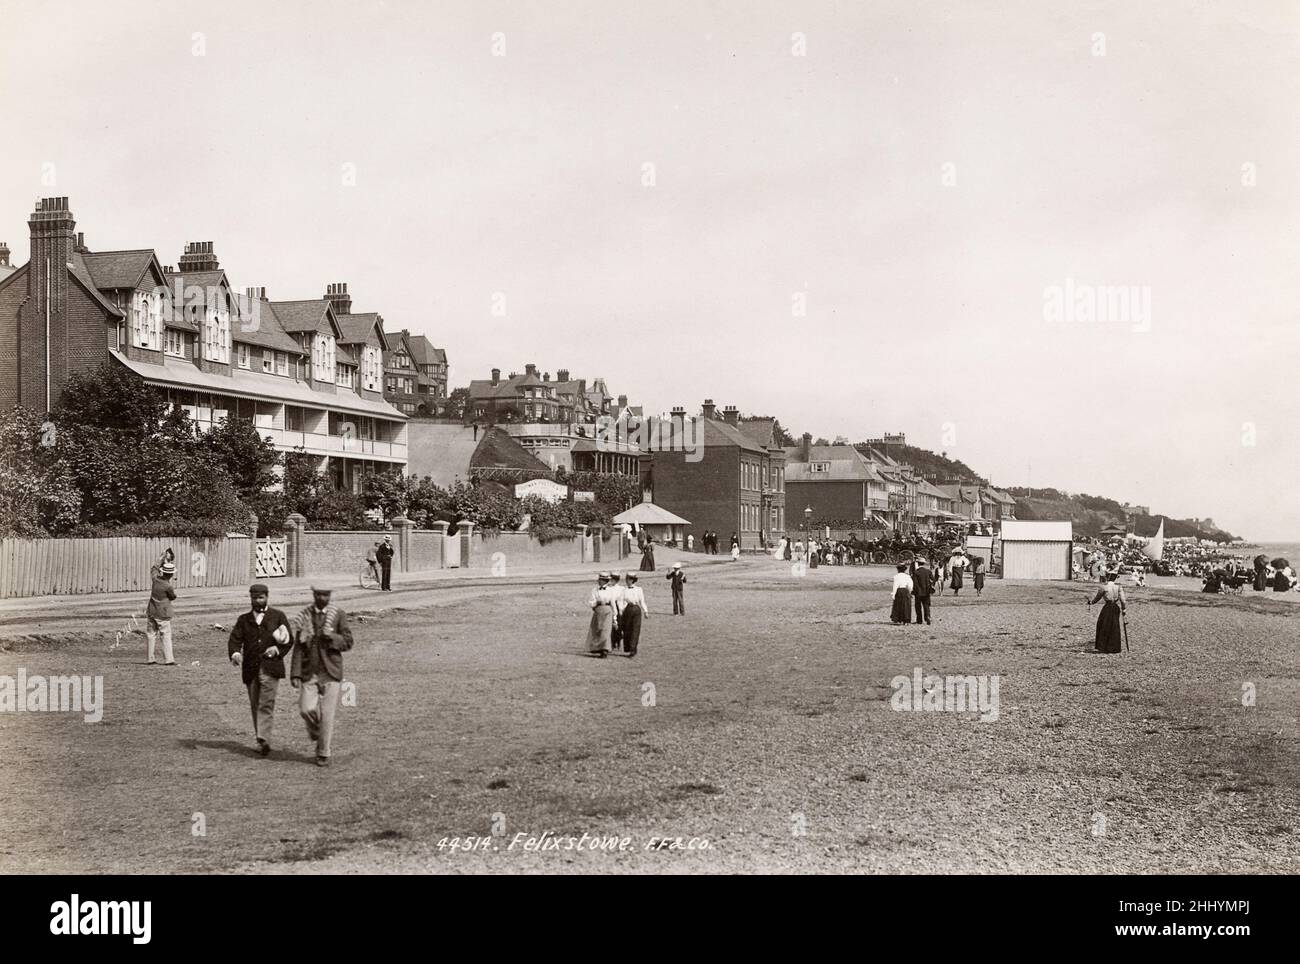 Fotografía vintage, finales de 19th, principios del siglo 20th, vista de la escena de la playa, Felixstowe Foto de stock